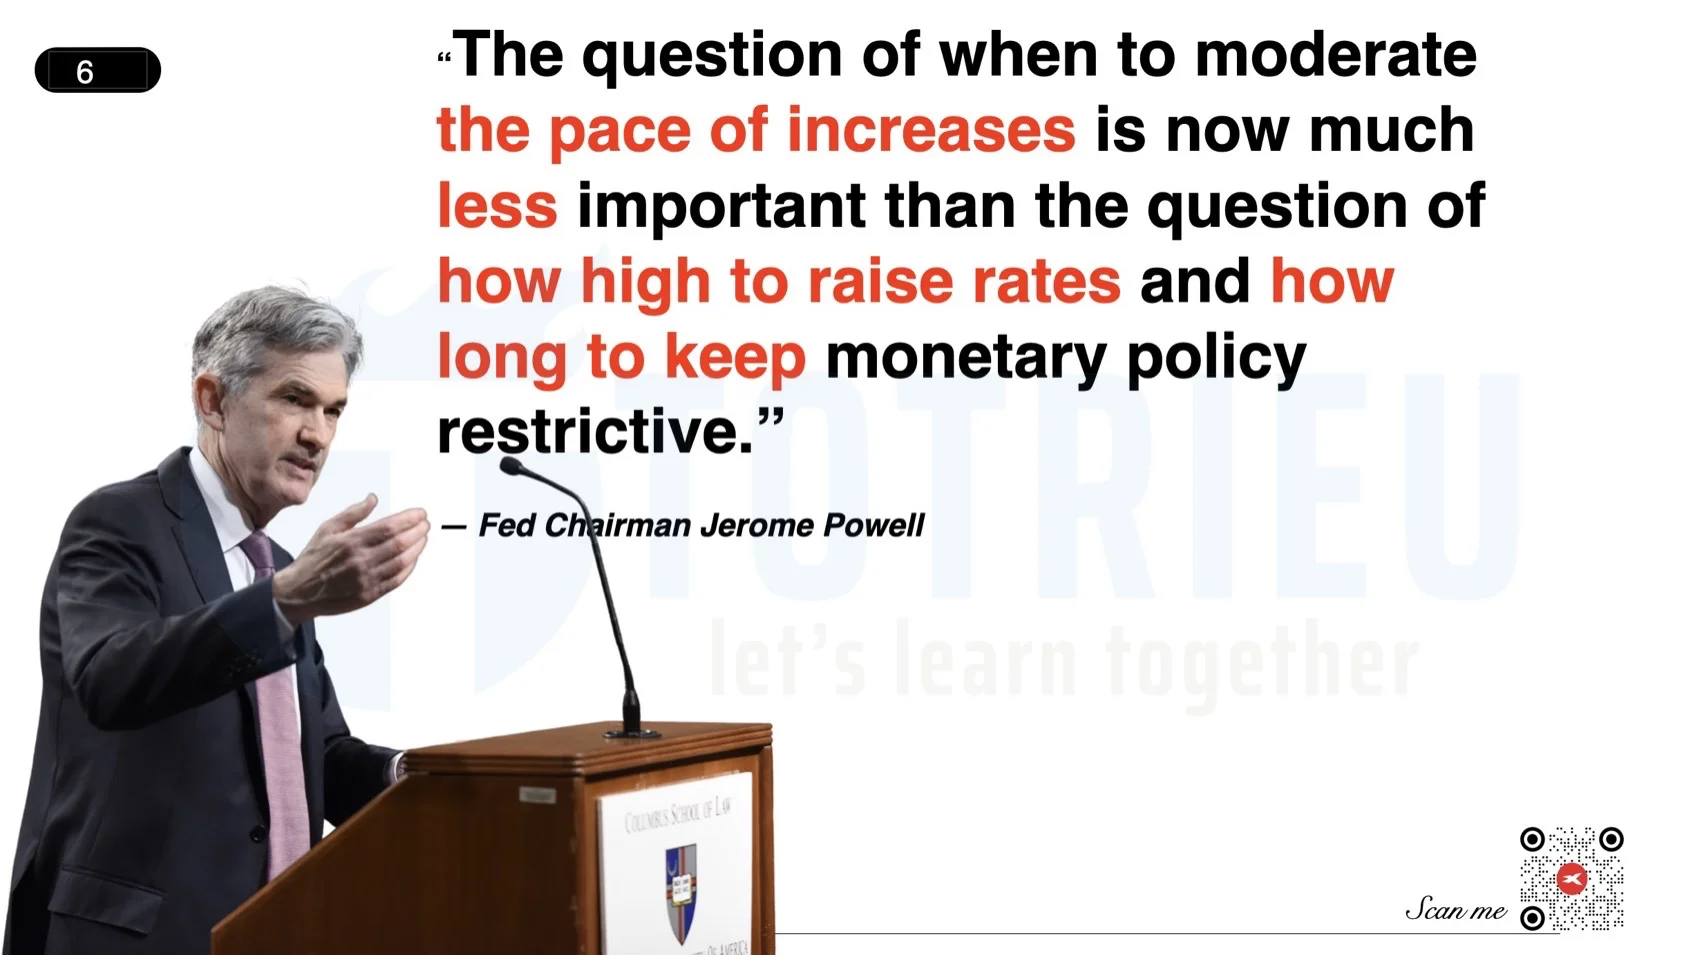 Powell cho biết điều quan trọng là sẽ tăng tới mức nào và duy trì chính sách trong bao lâu